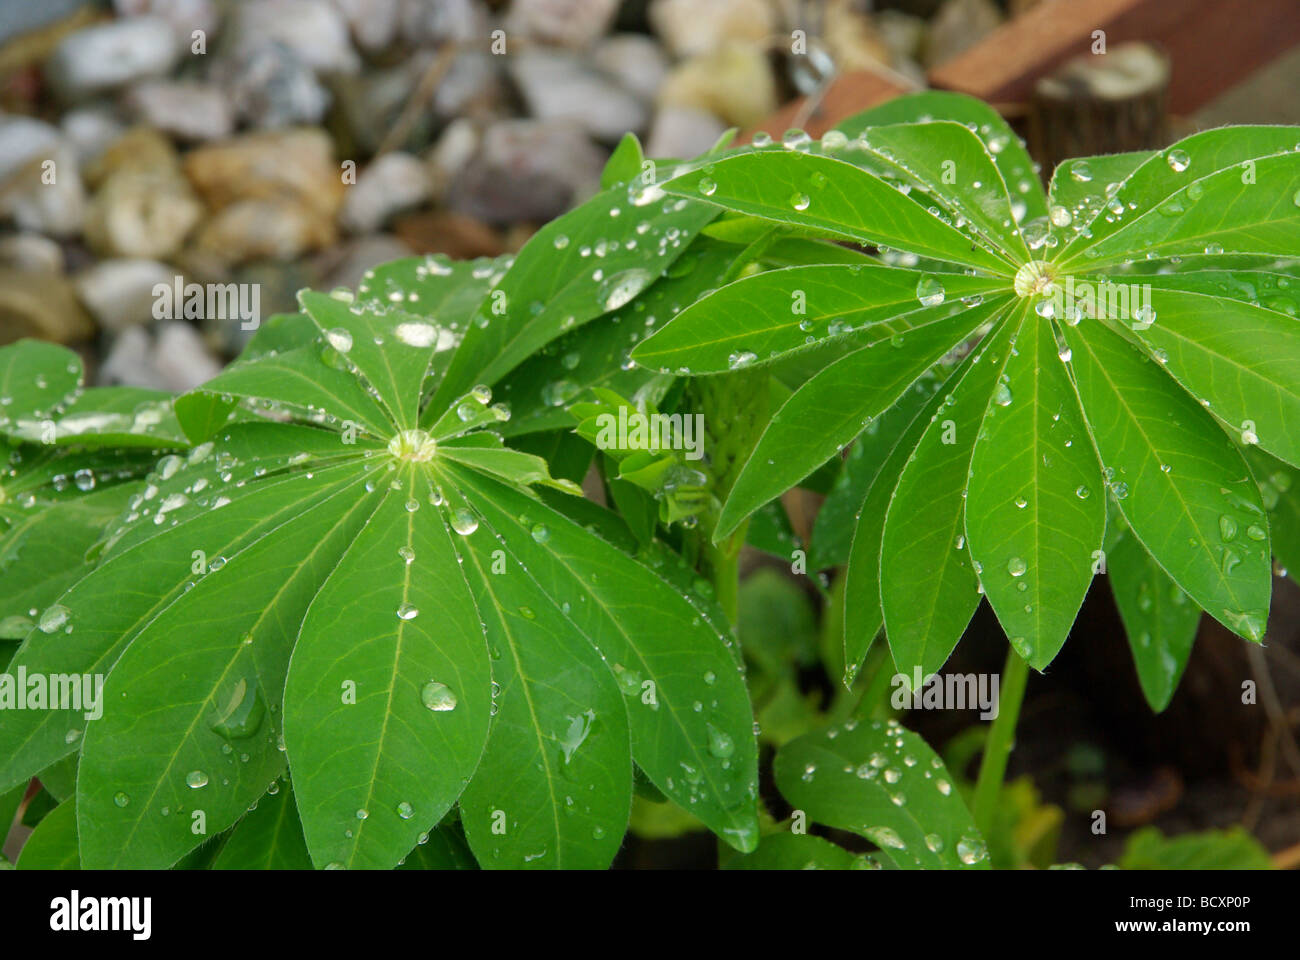 Lupine Blatt lupin leaf 04 Foto de stock